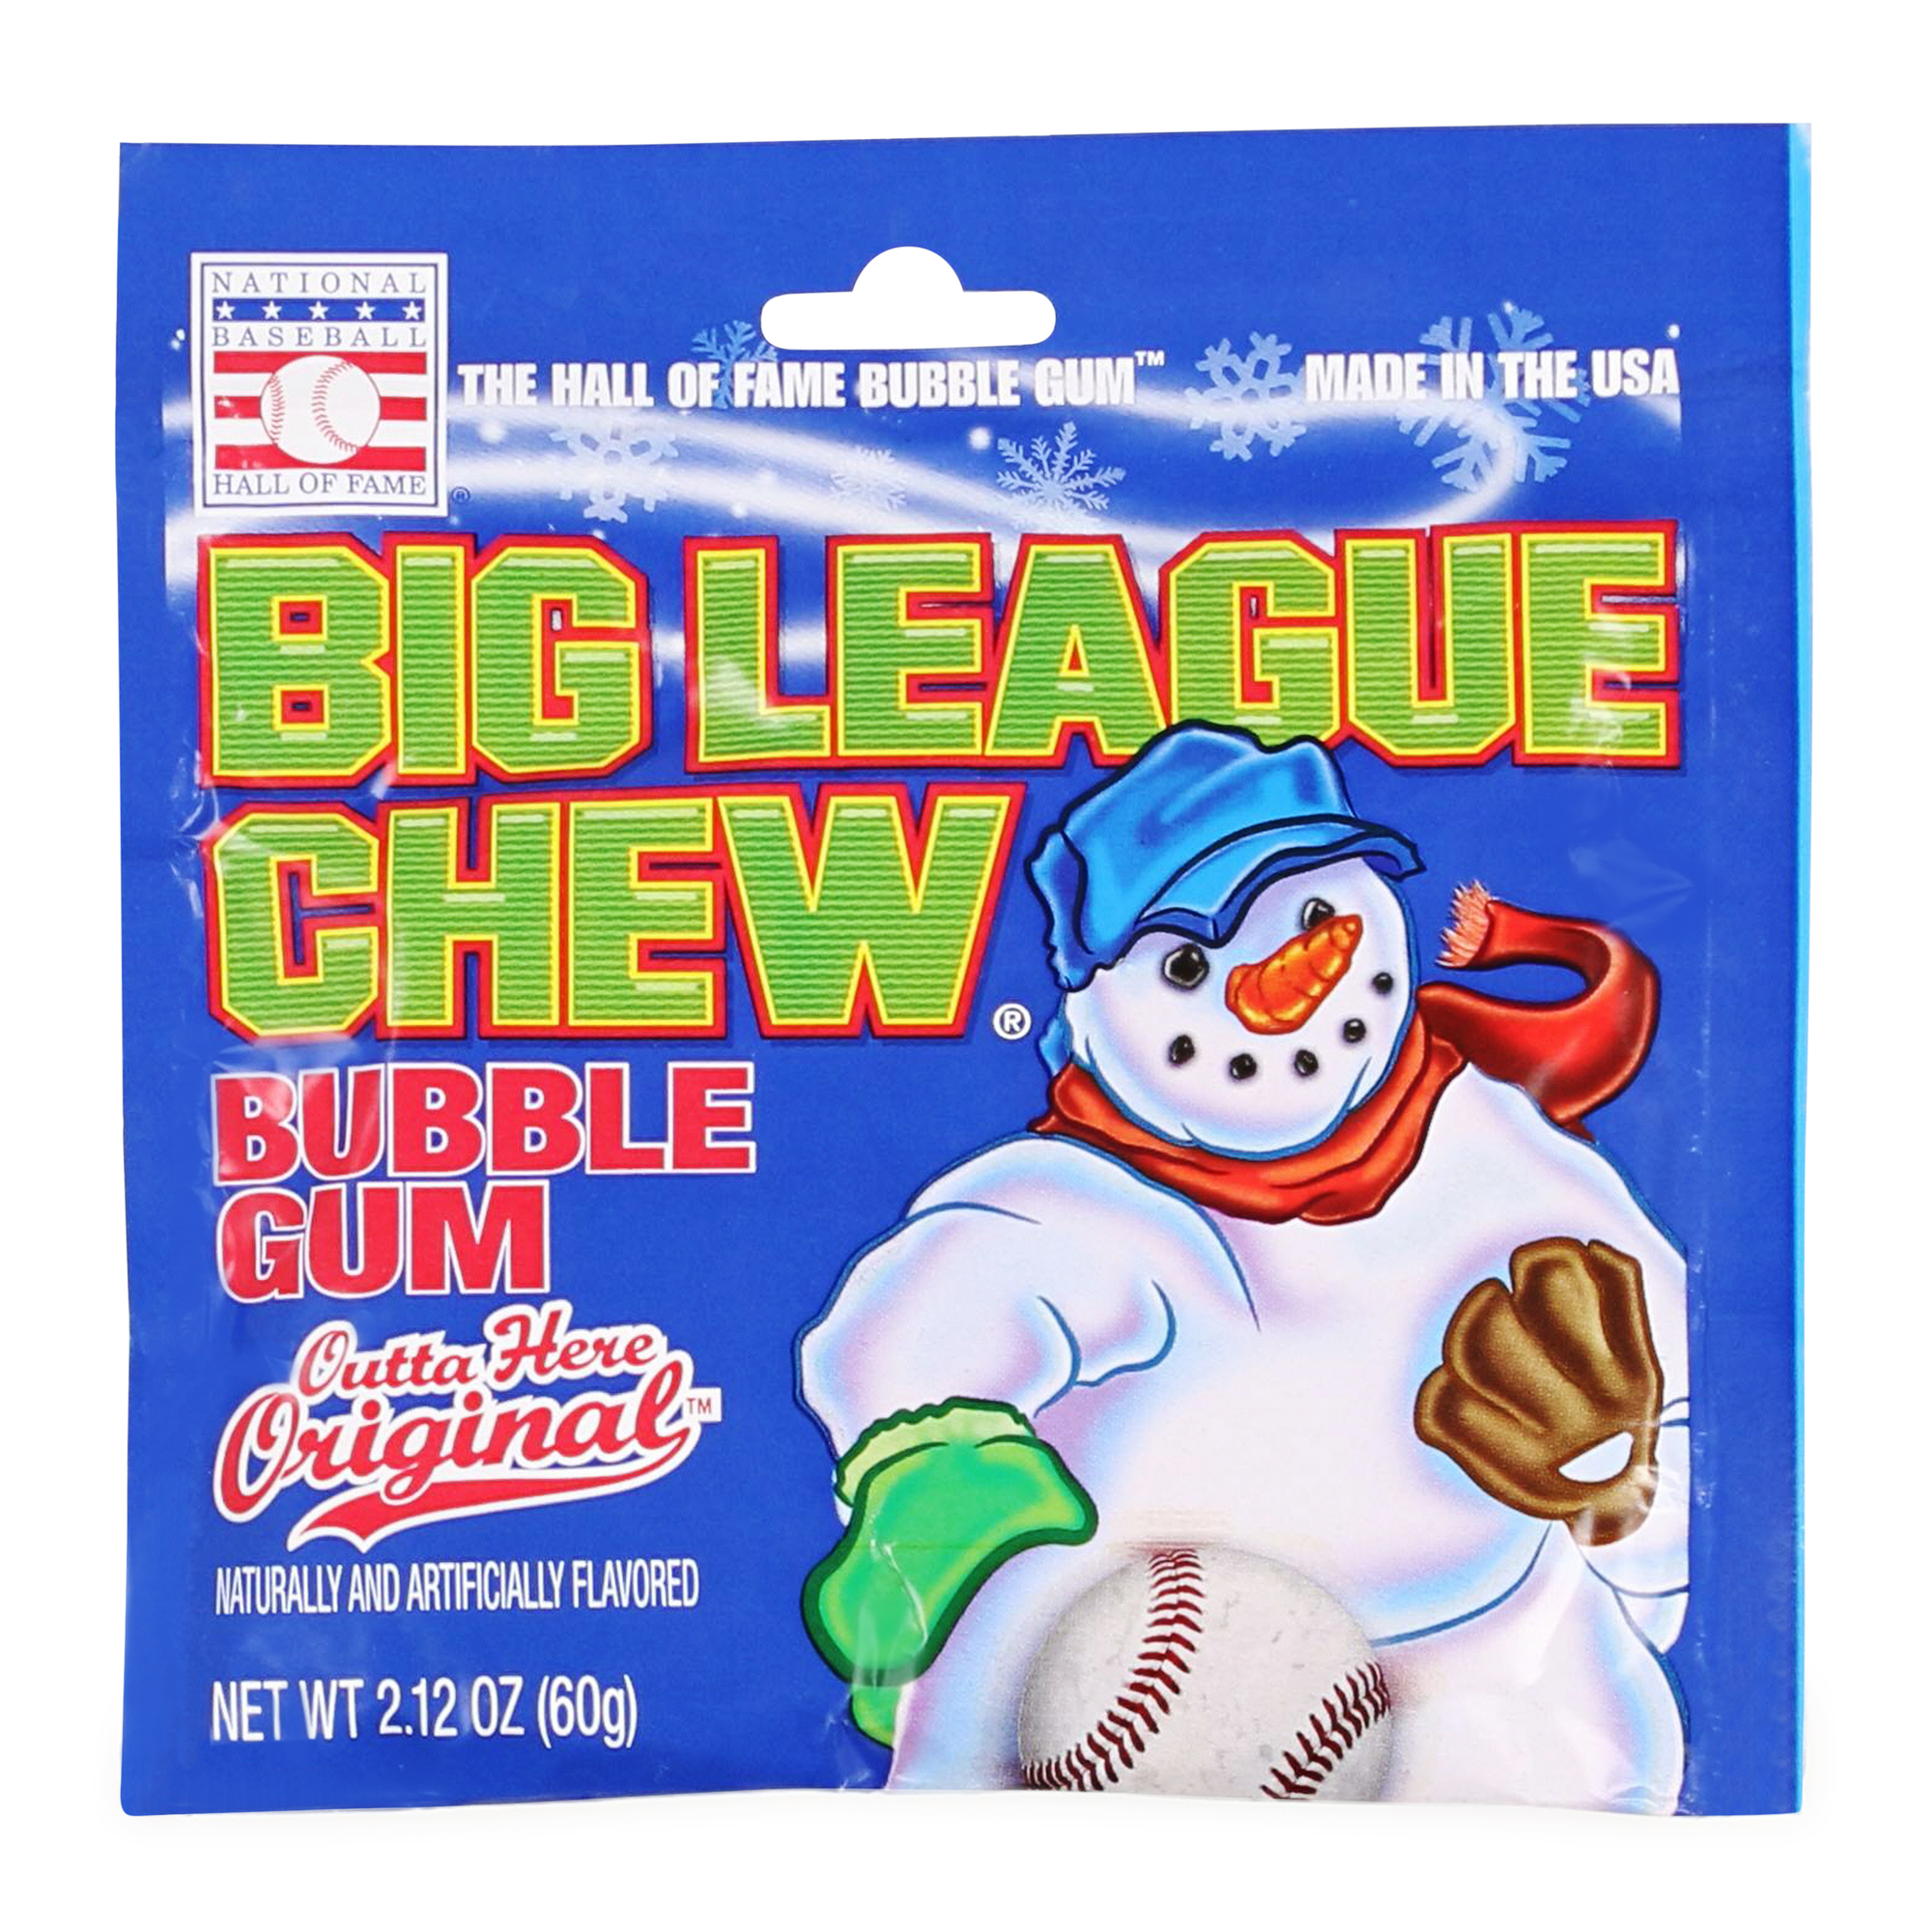 Big League Chew Outta' Here Original Bubble Gum 2.12 Oz